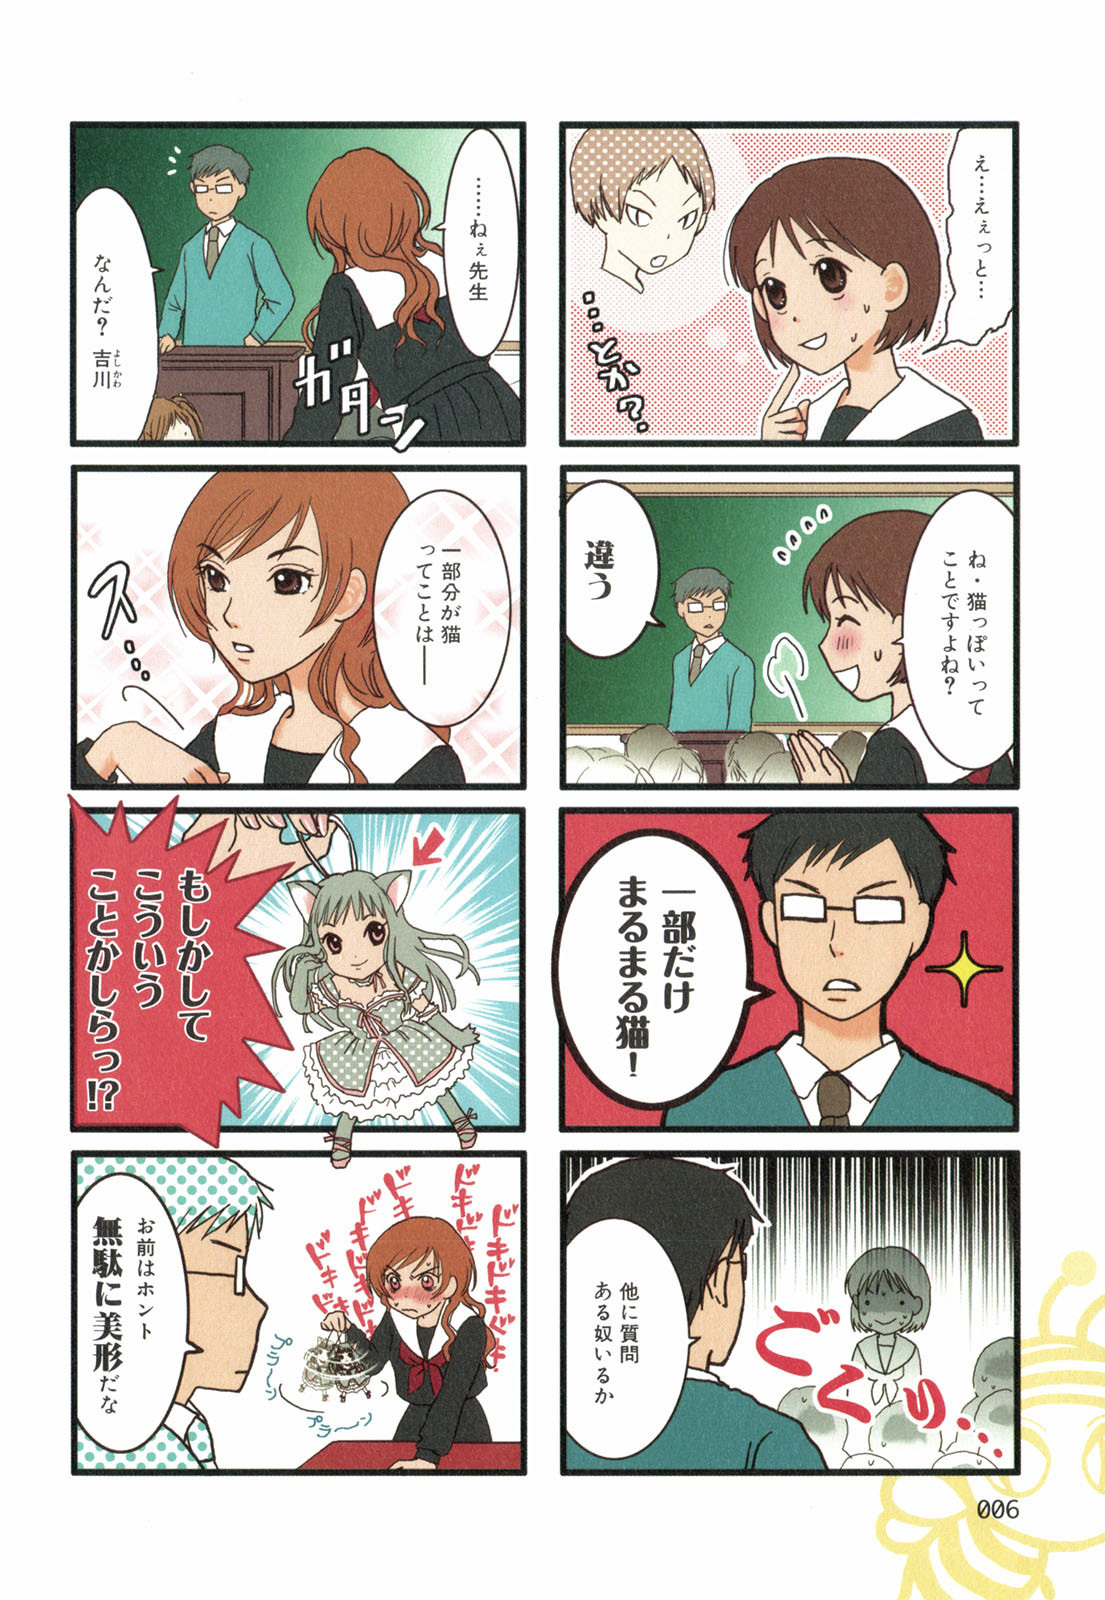 Tonari No Neneko San となりのネネコさん Chapter Volume 01 Page 7 Raw Sen Manga